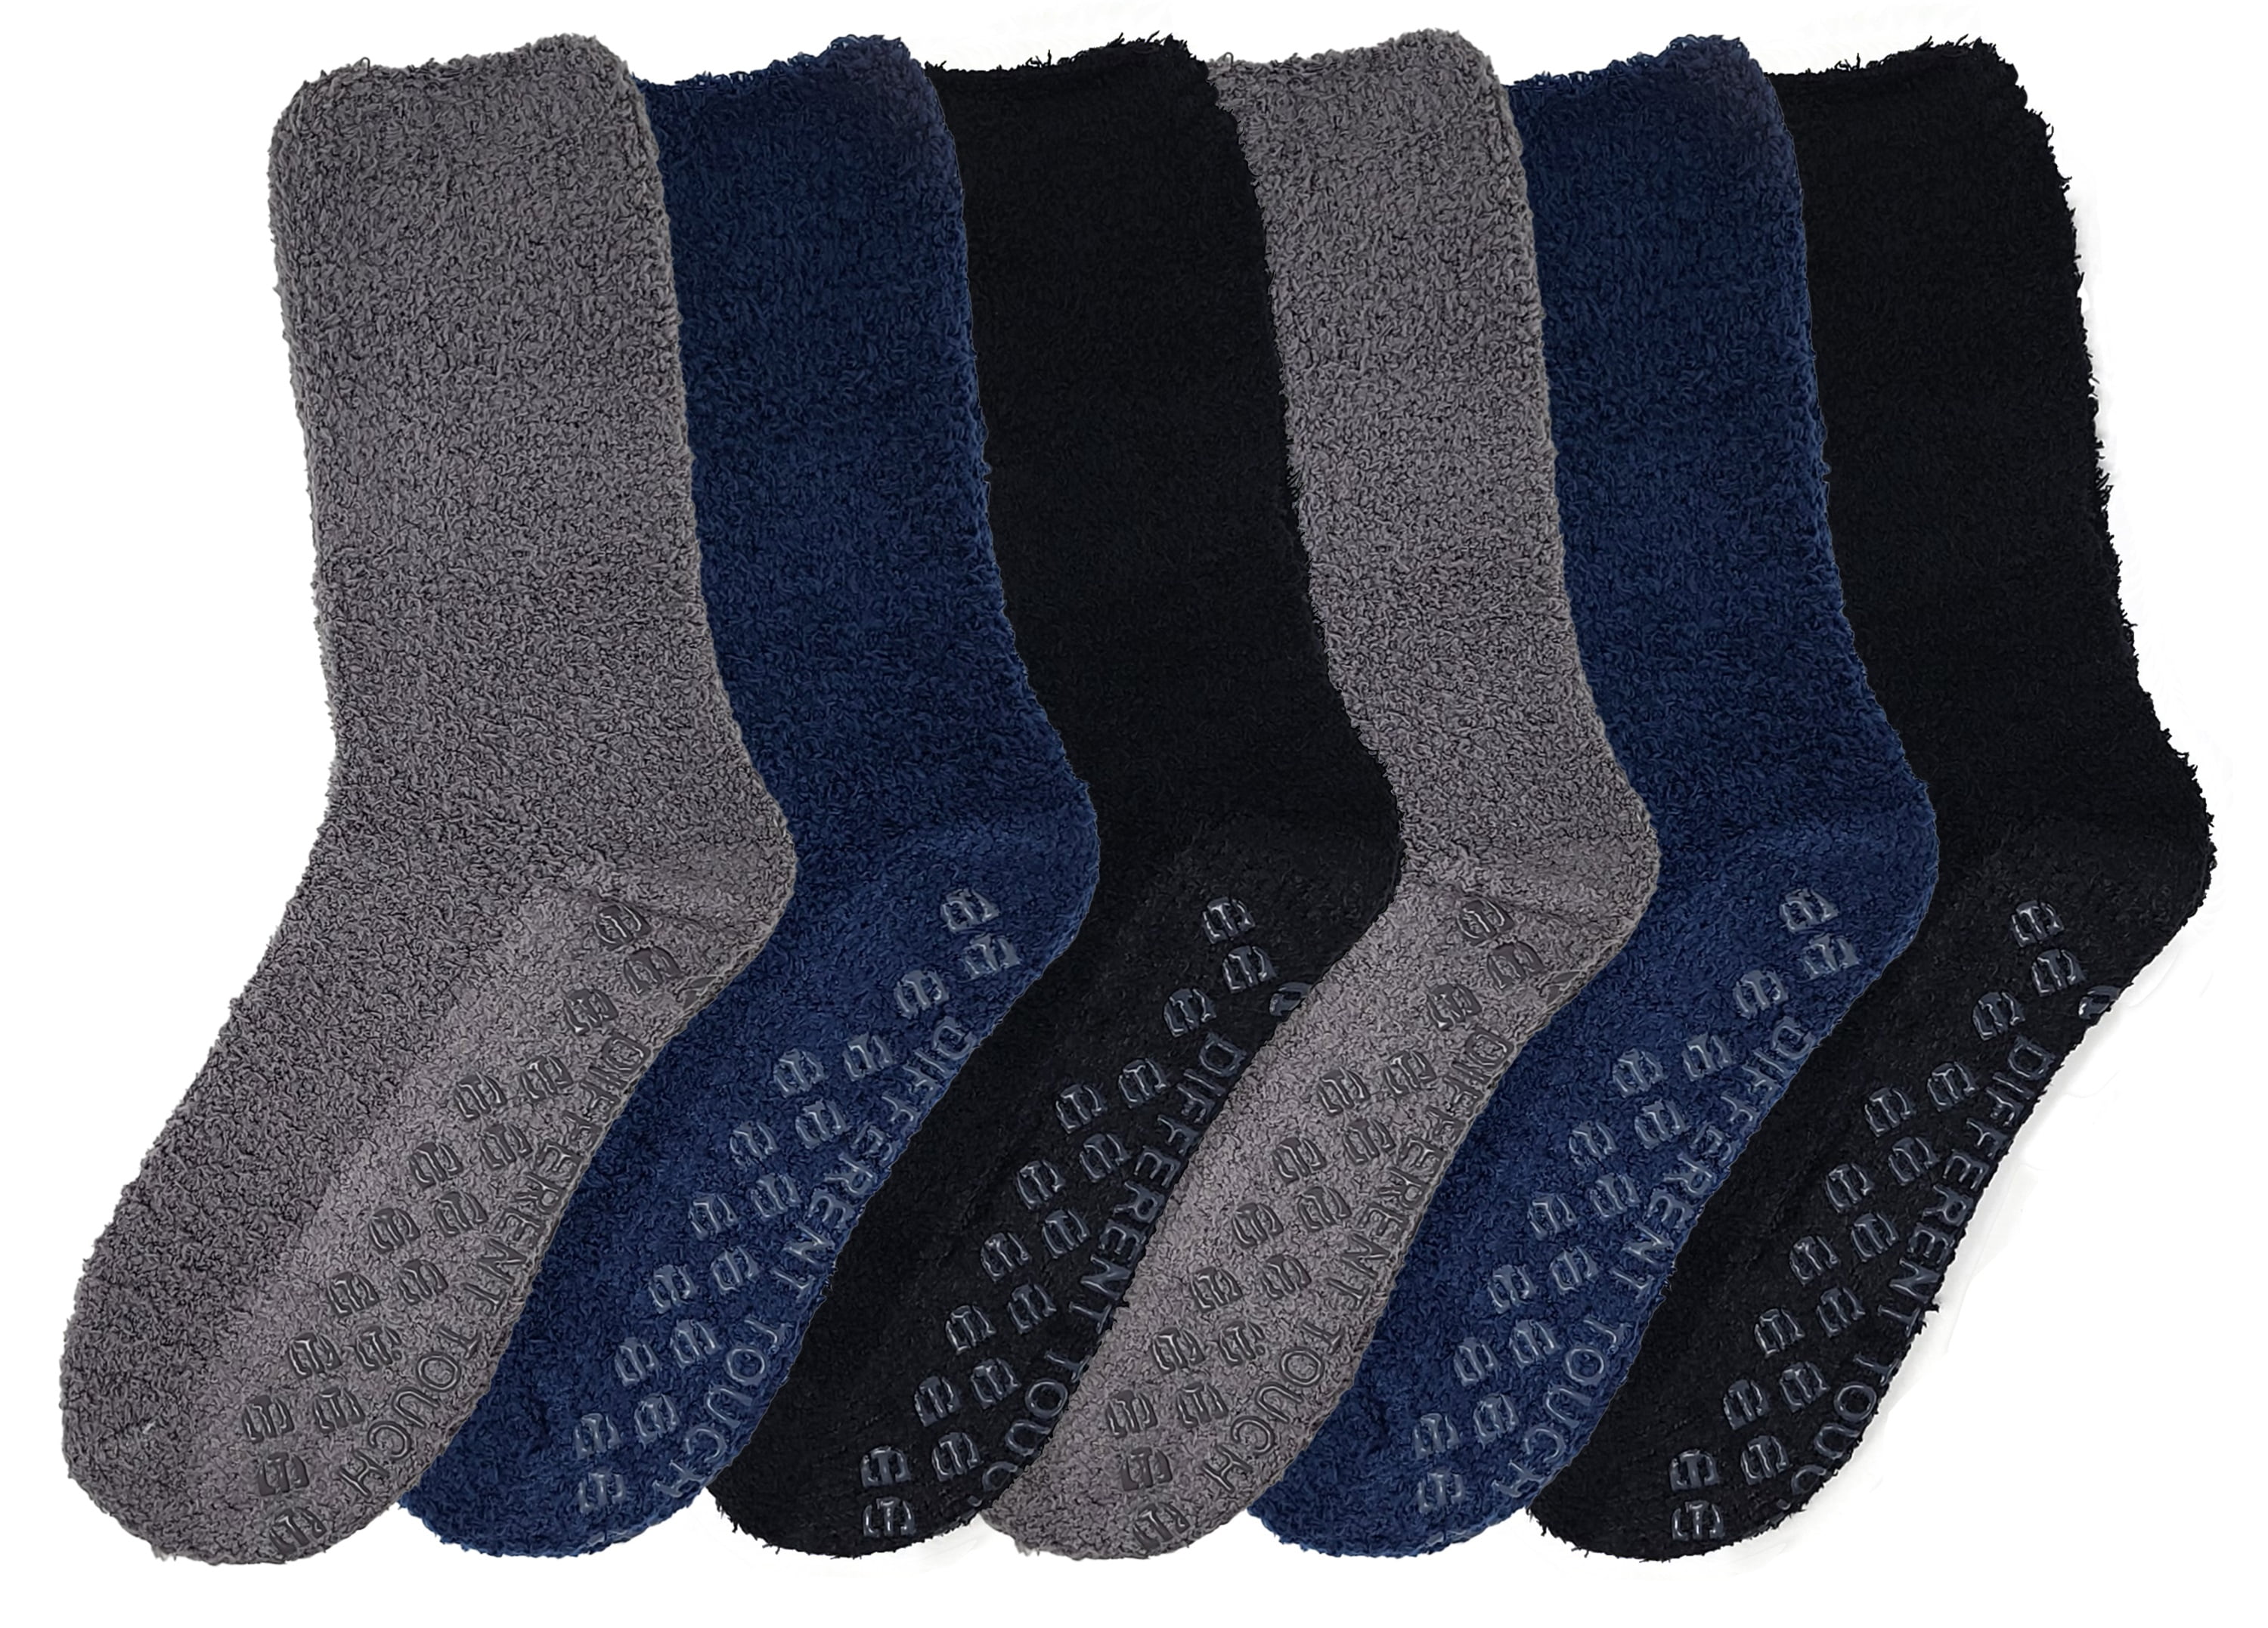 Non Slip Yoga Socks with Grips Cotton Socks Anti-Skid Socks for Men and Women